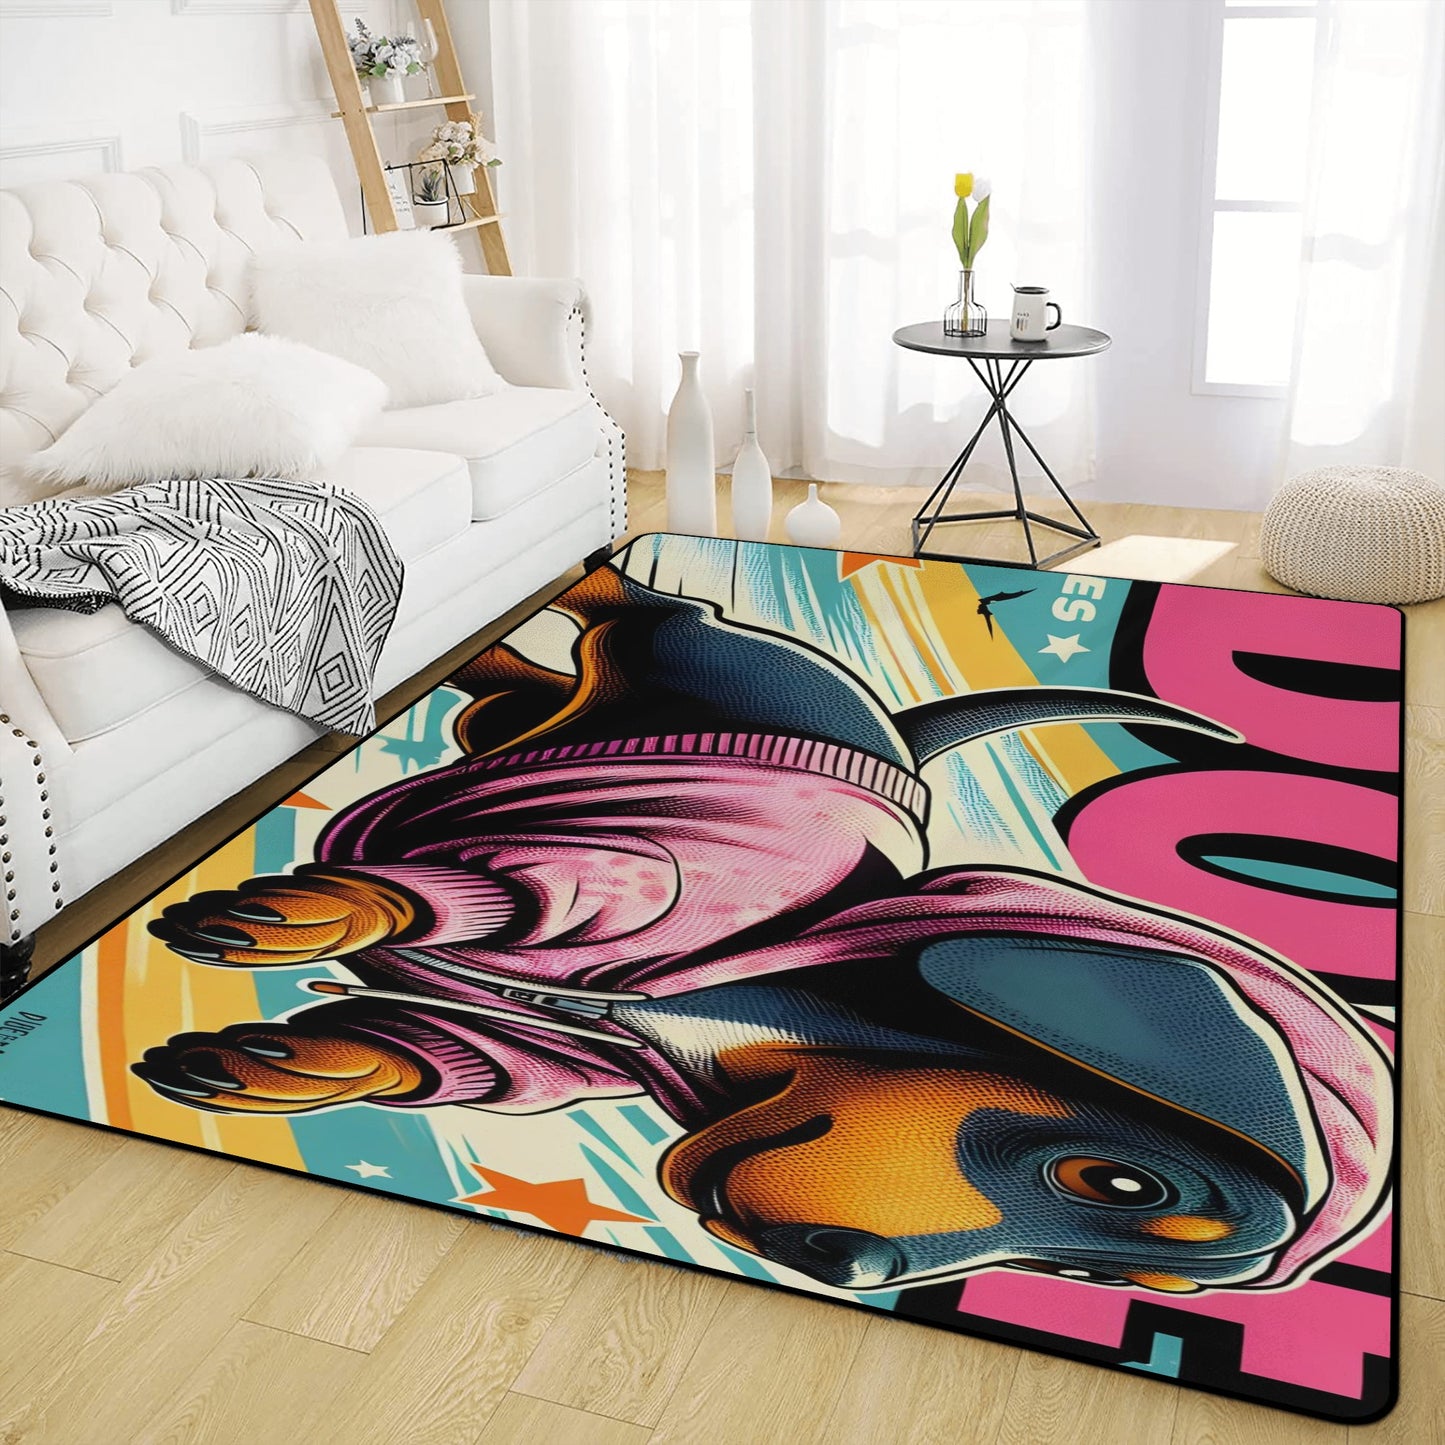 Banger - Living Room Carpet Rug